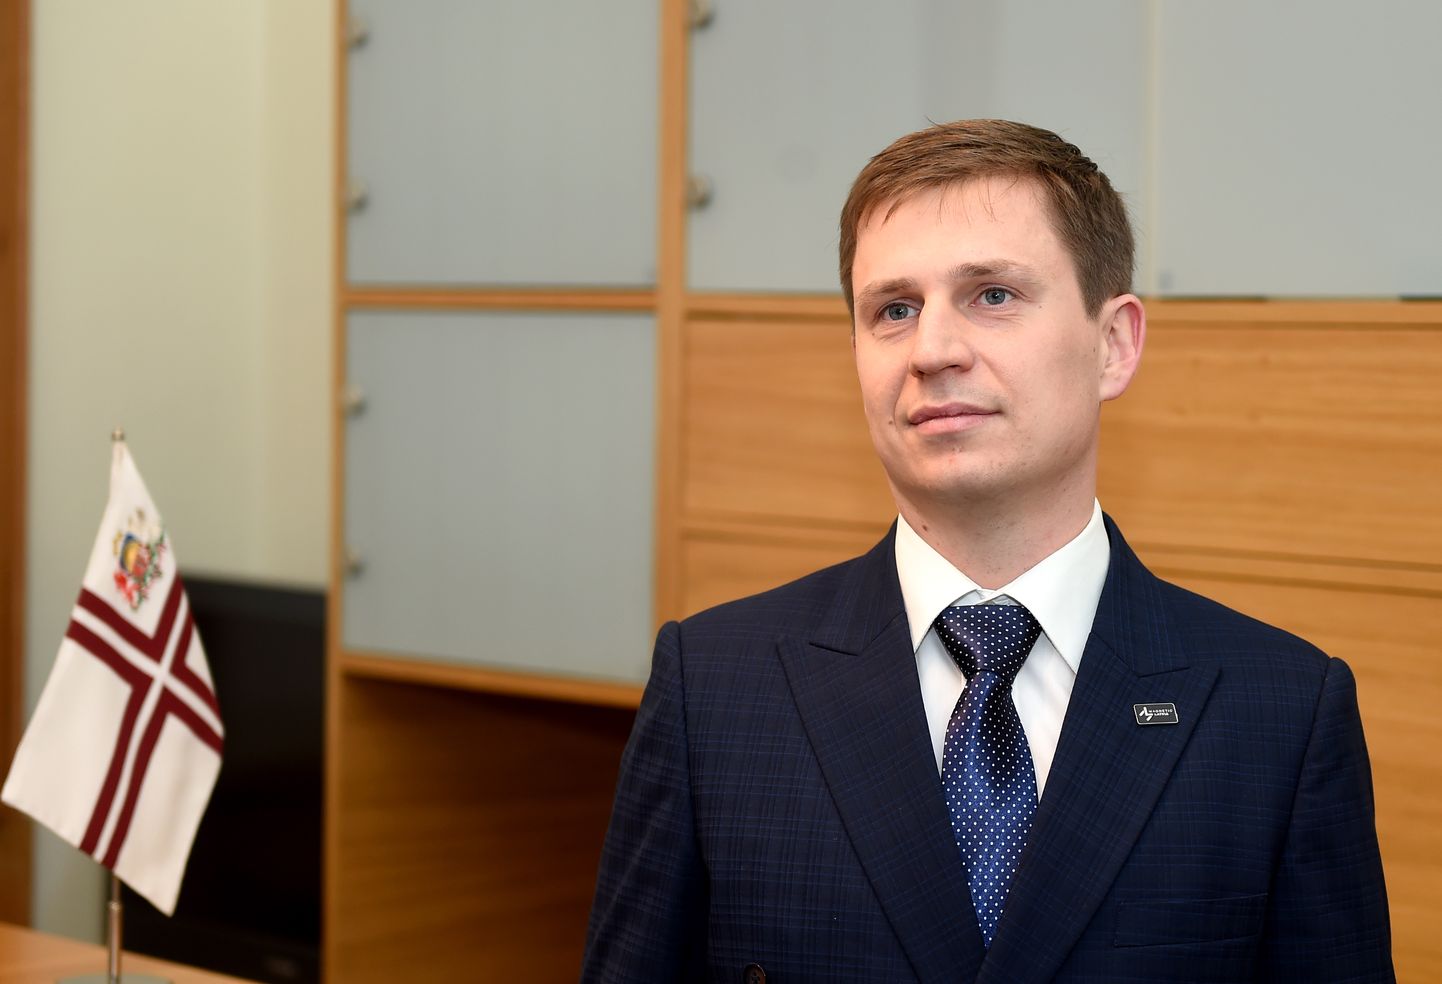 Latvijas Investīciju un attīstības aģentūras direktors Kaspars Rožkalns pirms tikšanās ar Ministru prezidentu valdības namā.